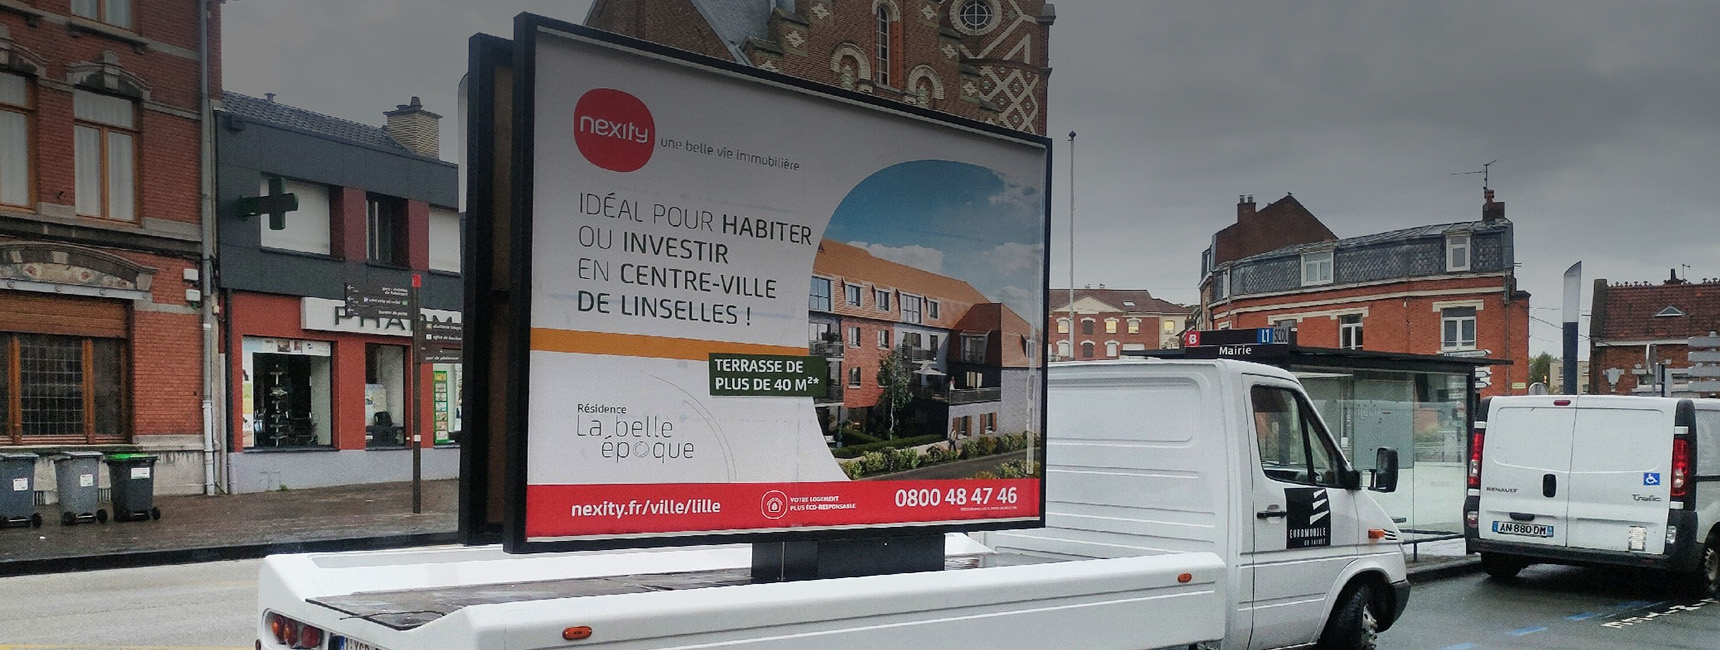 affich'mobile pour Nexity - Keemia Lille agence de marketing locale en région haut de france